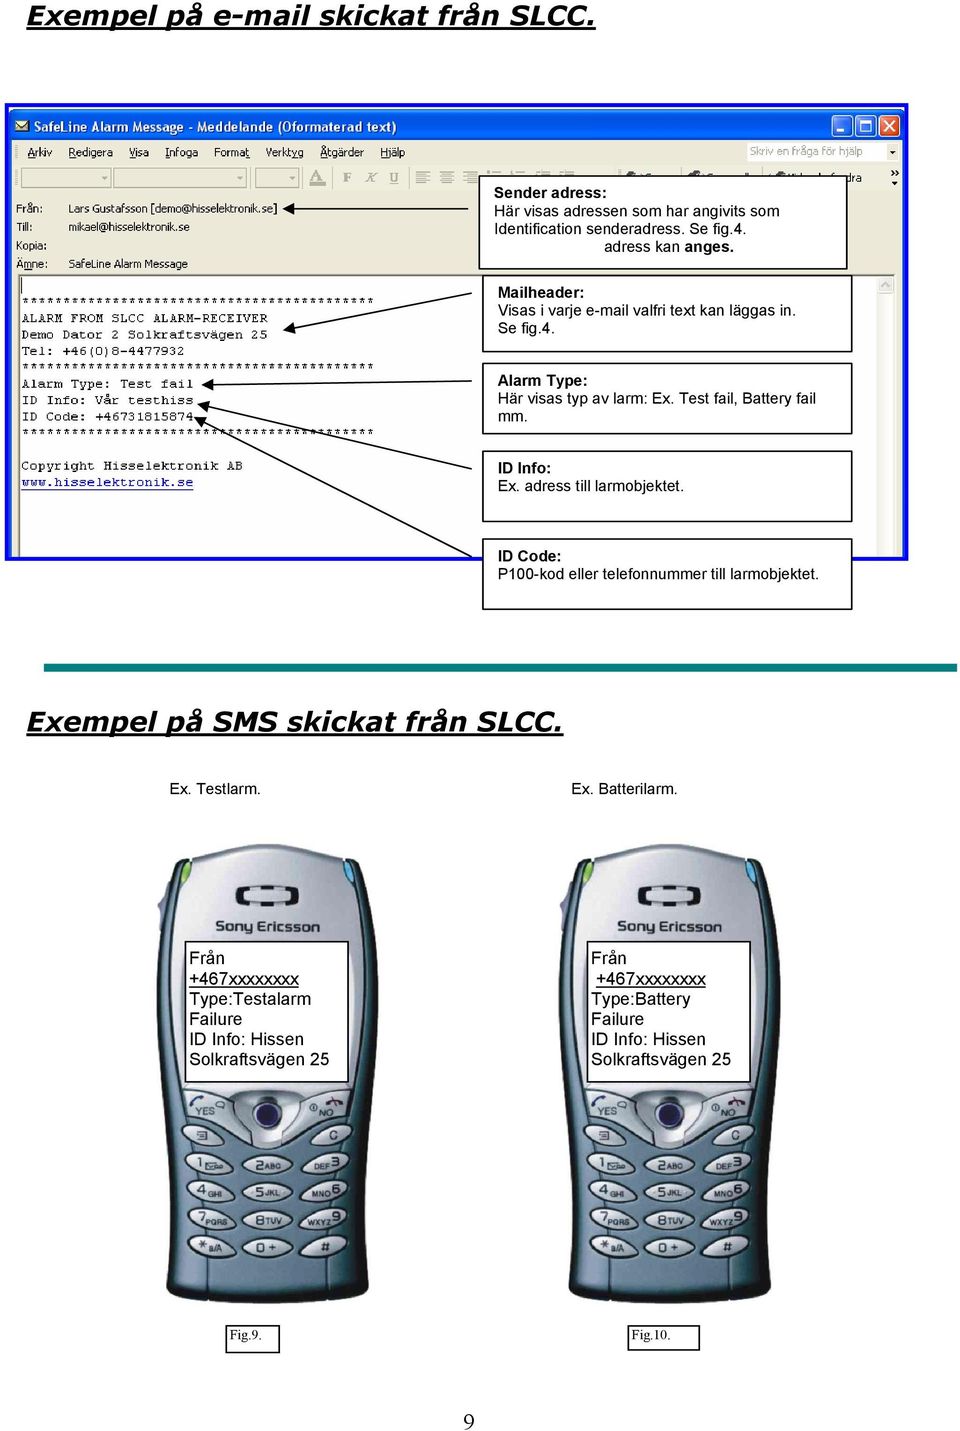 adress till larmobjektet. ID Code: P100-kod eller telefonnummer till larmobjektet. Exempel på SMS skickat från SLCC. Ex. Testlarm. Ex. Batterilarm.